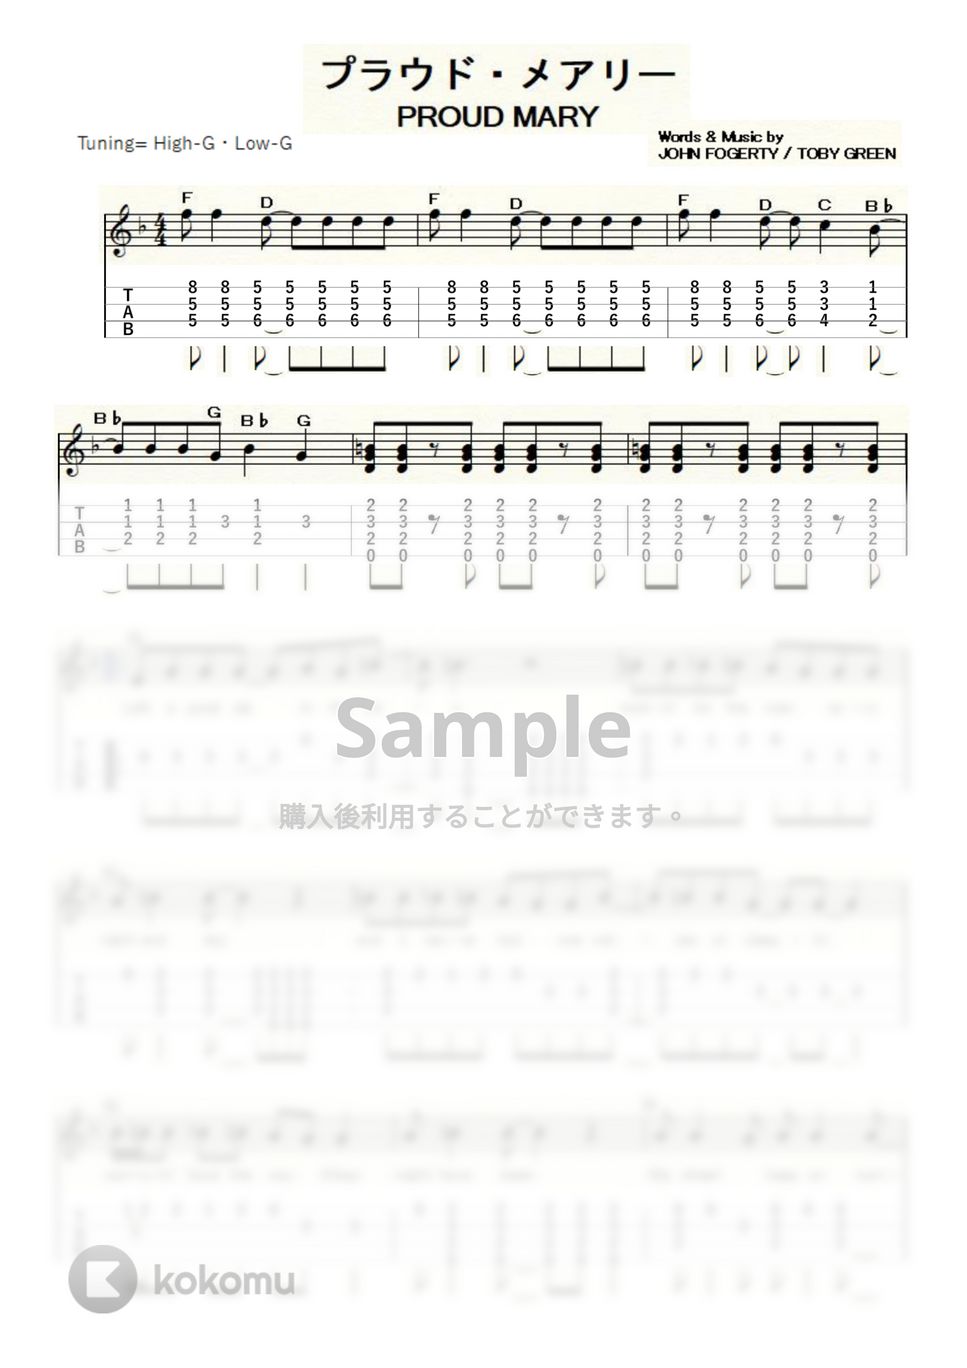 クリーデンス・クリアウォーター・リバイバル - PROUD MARY (ｳｸﾚﾚｿﾛ/High-G・Low-G/中級) by ukulelepapa